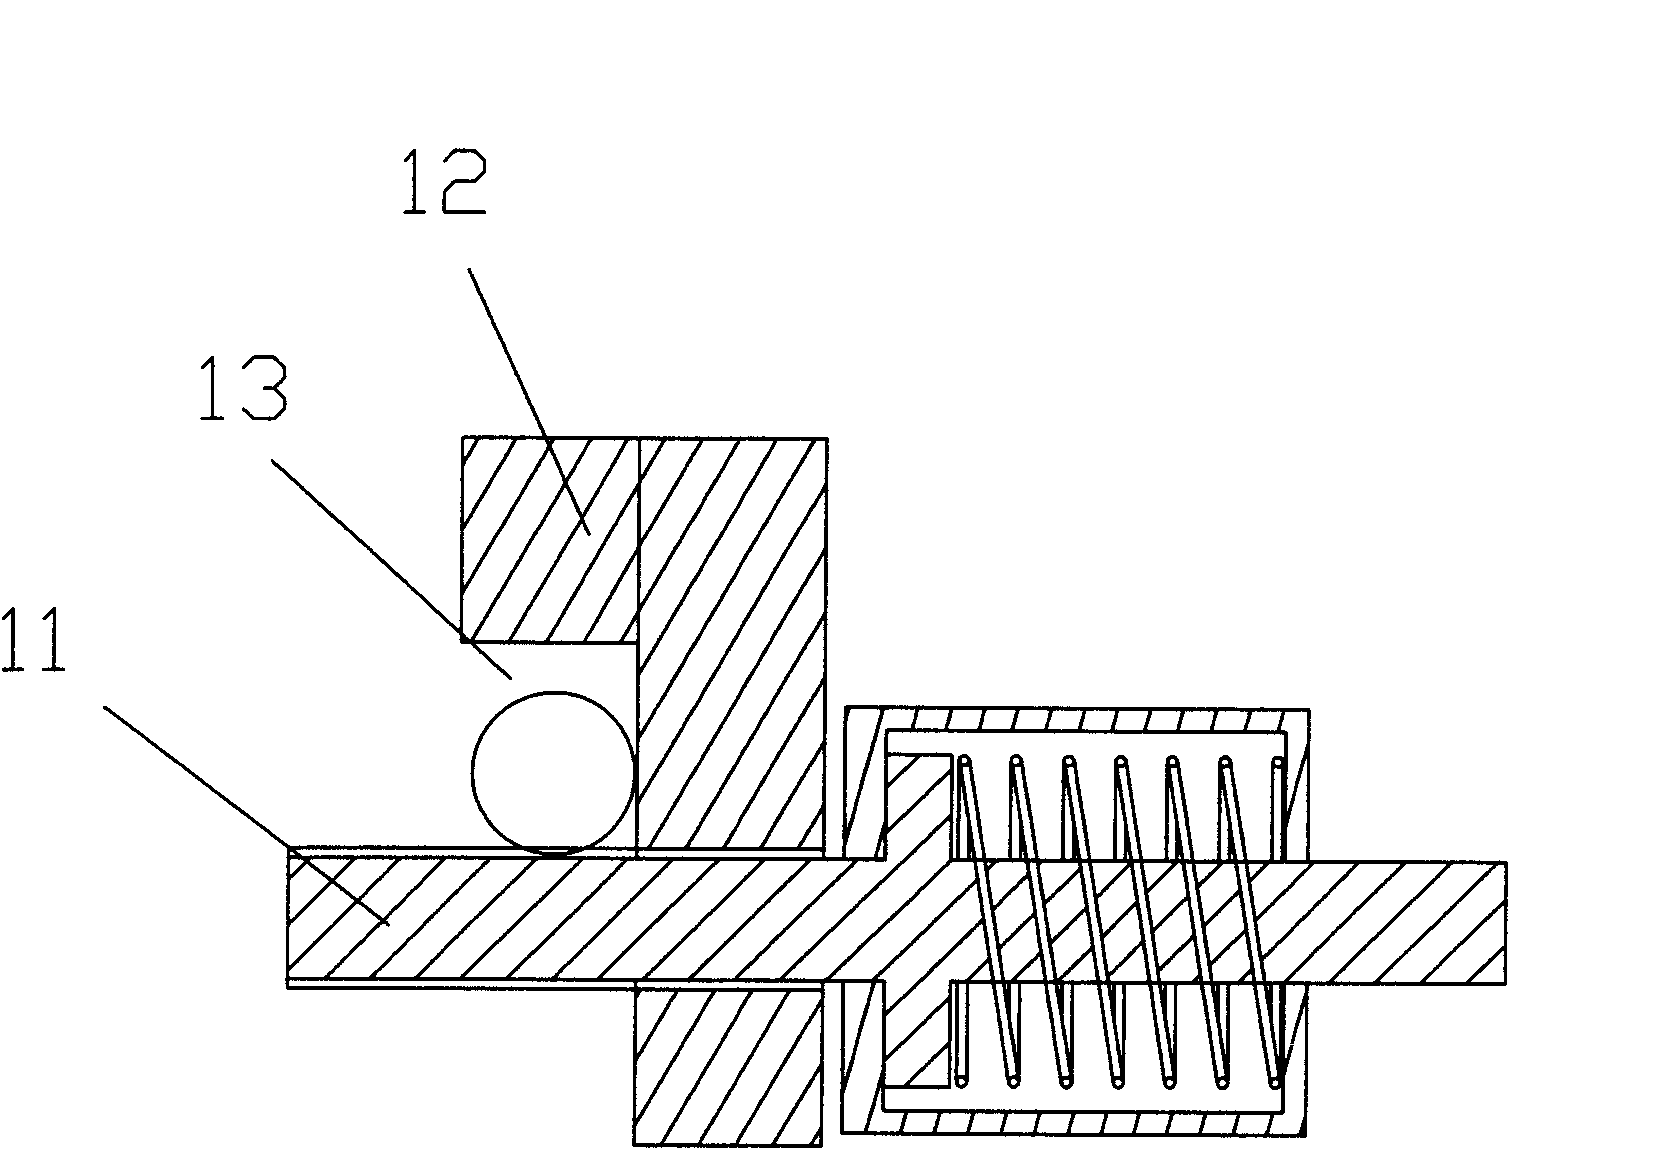 Feeding mechanism of vertical multi-start hoop bending machine